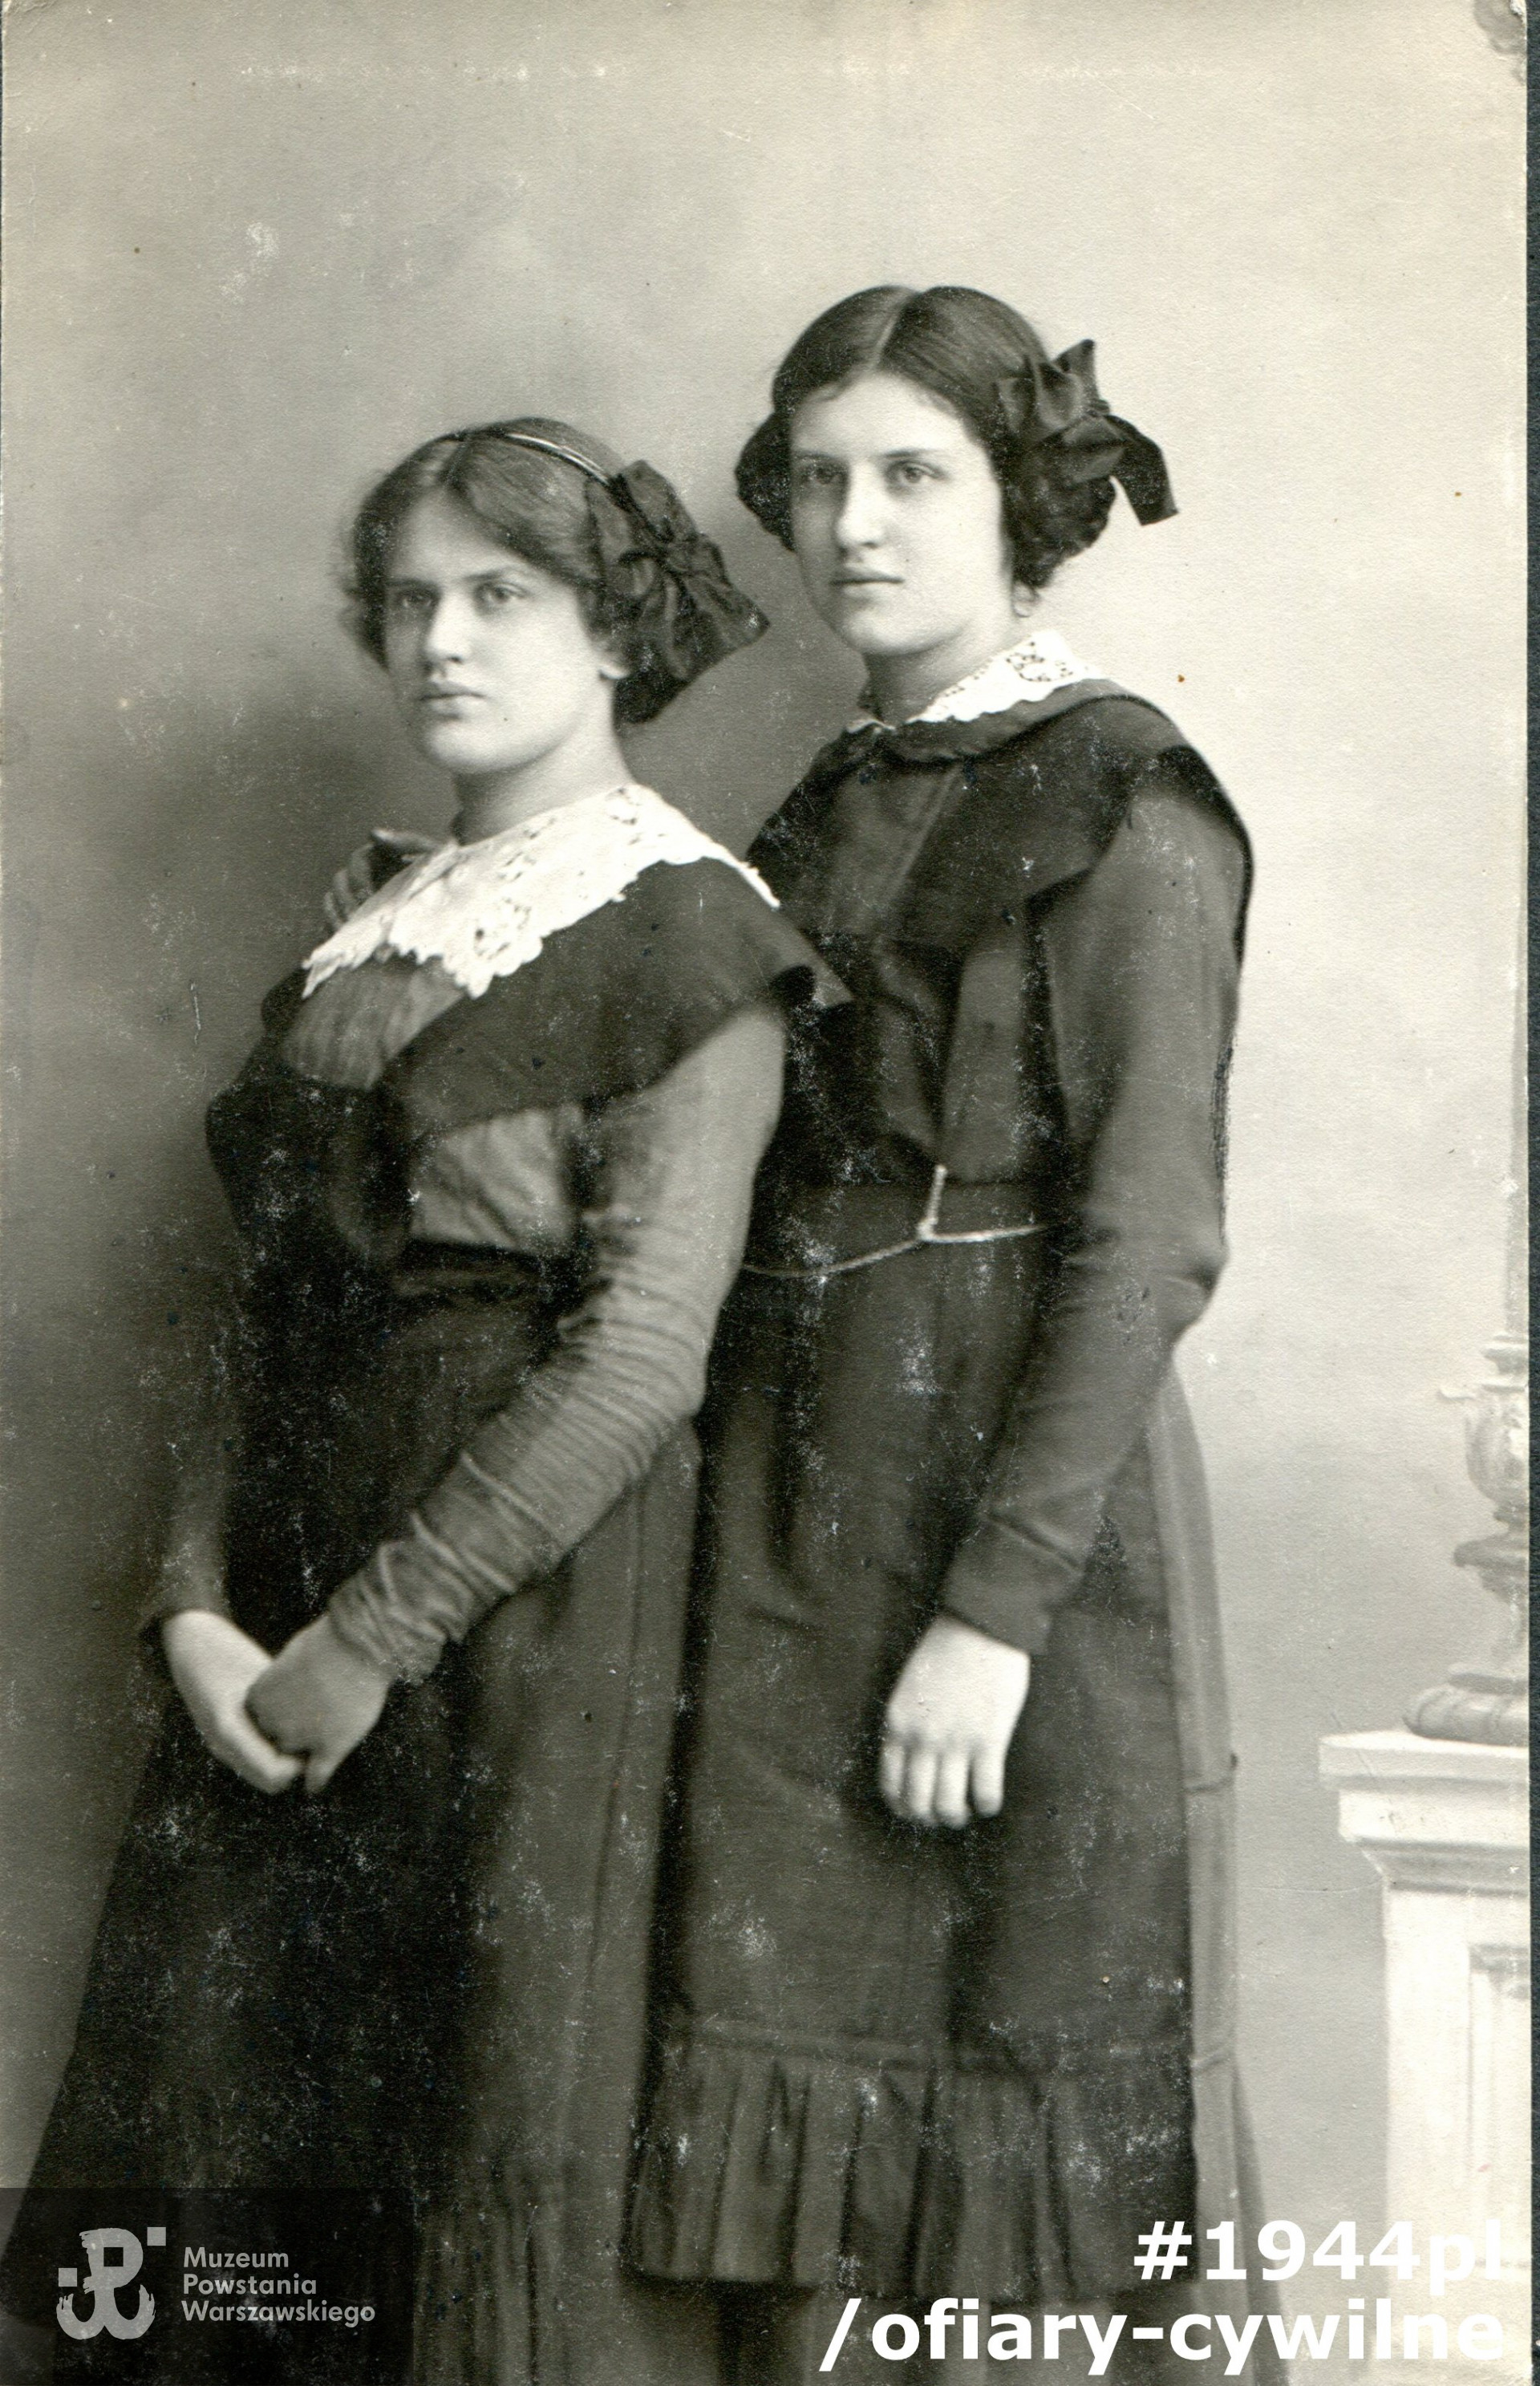 Siostry Marendowskie; Helena (po mężu Świtalska) i Jadwiga (po mężu Piwnicka), fotografia ze zbiorów rodzinnych